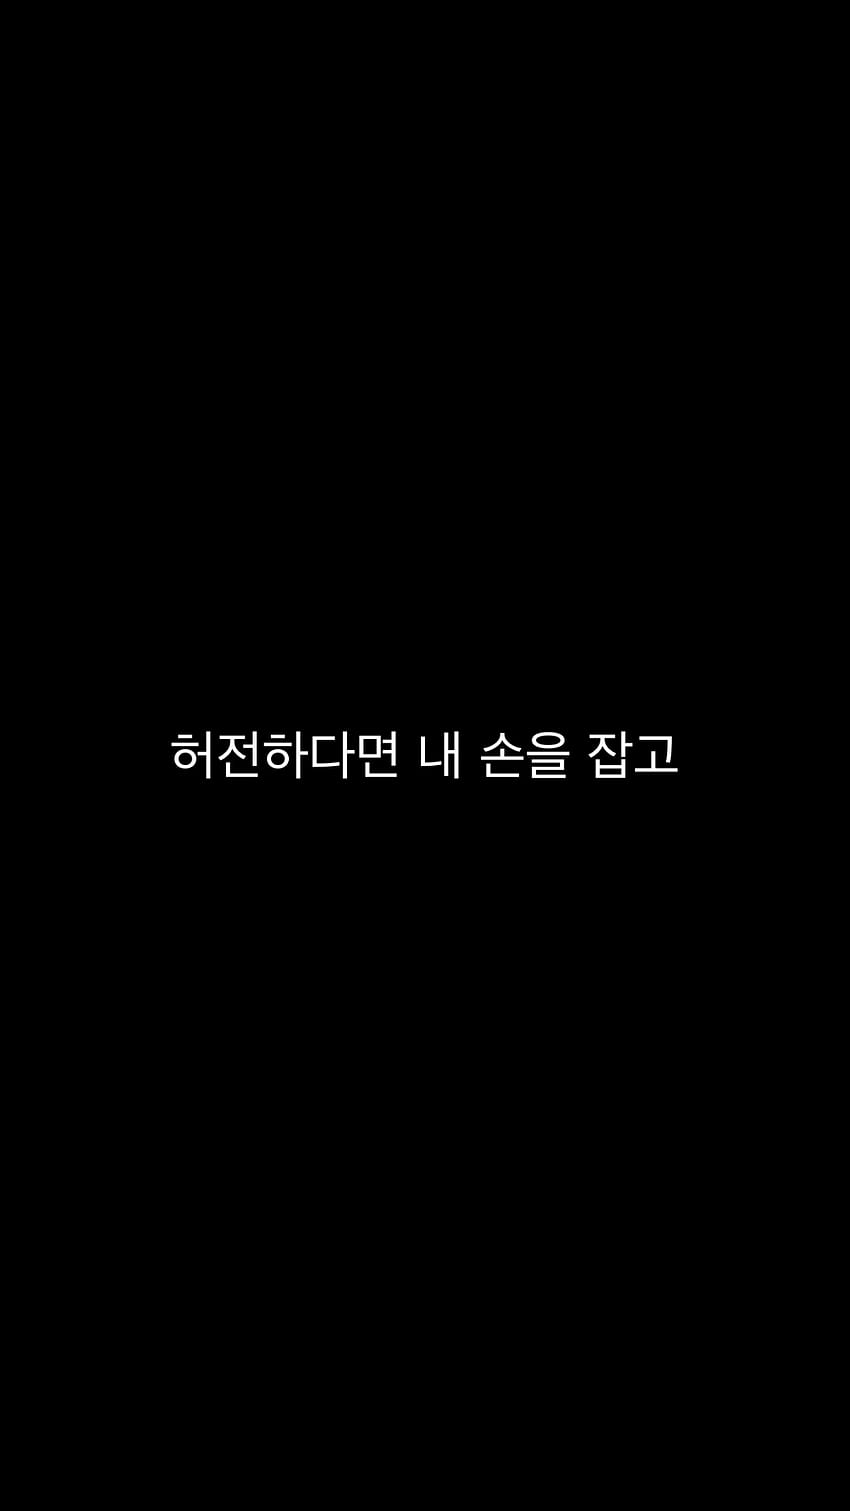 Pin on Korean Language, korean writing HD phone wallpaper